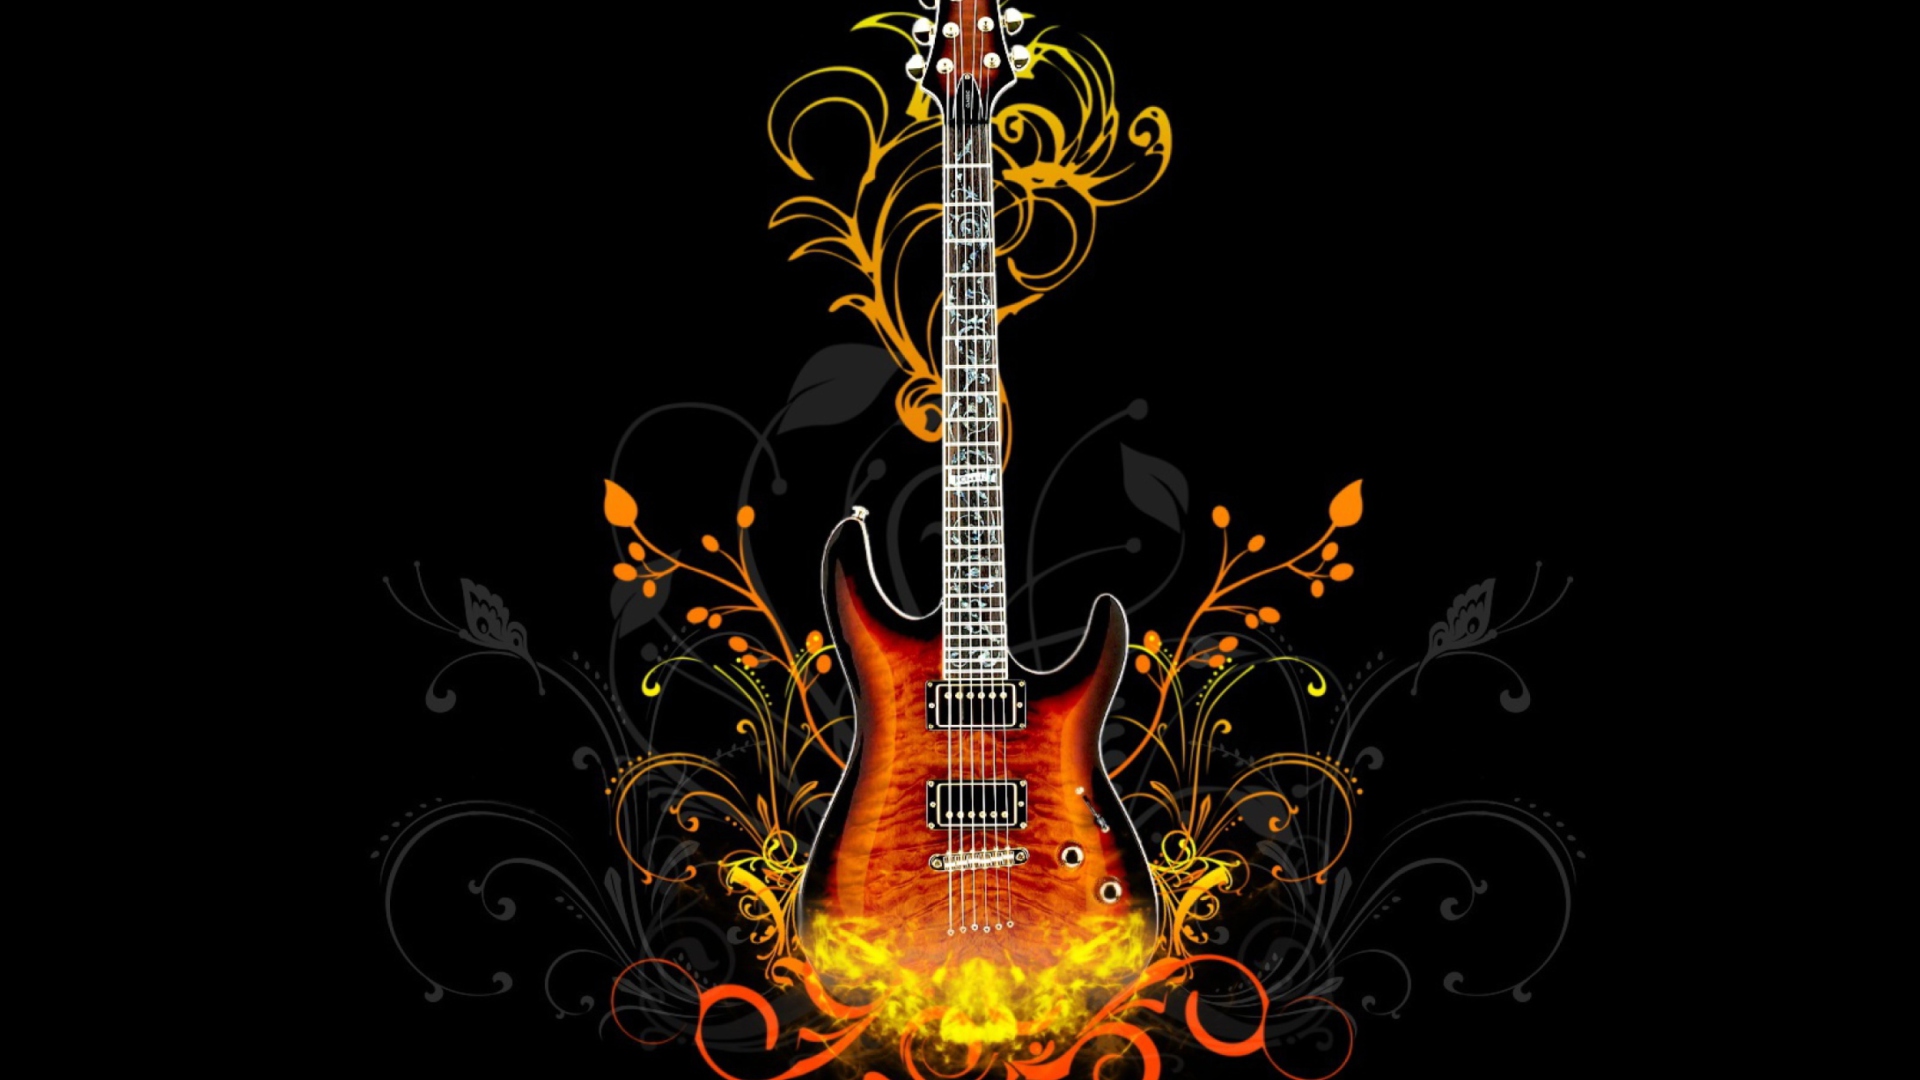 Das Guitar Abstract Wallpaper 1920x1080